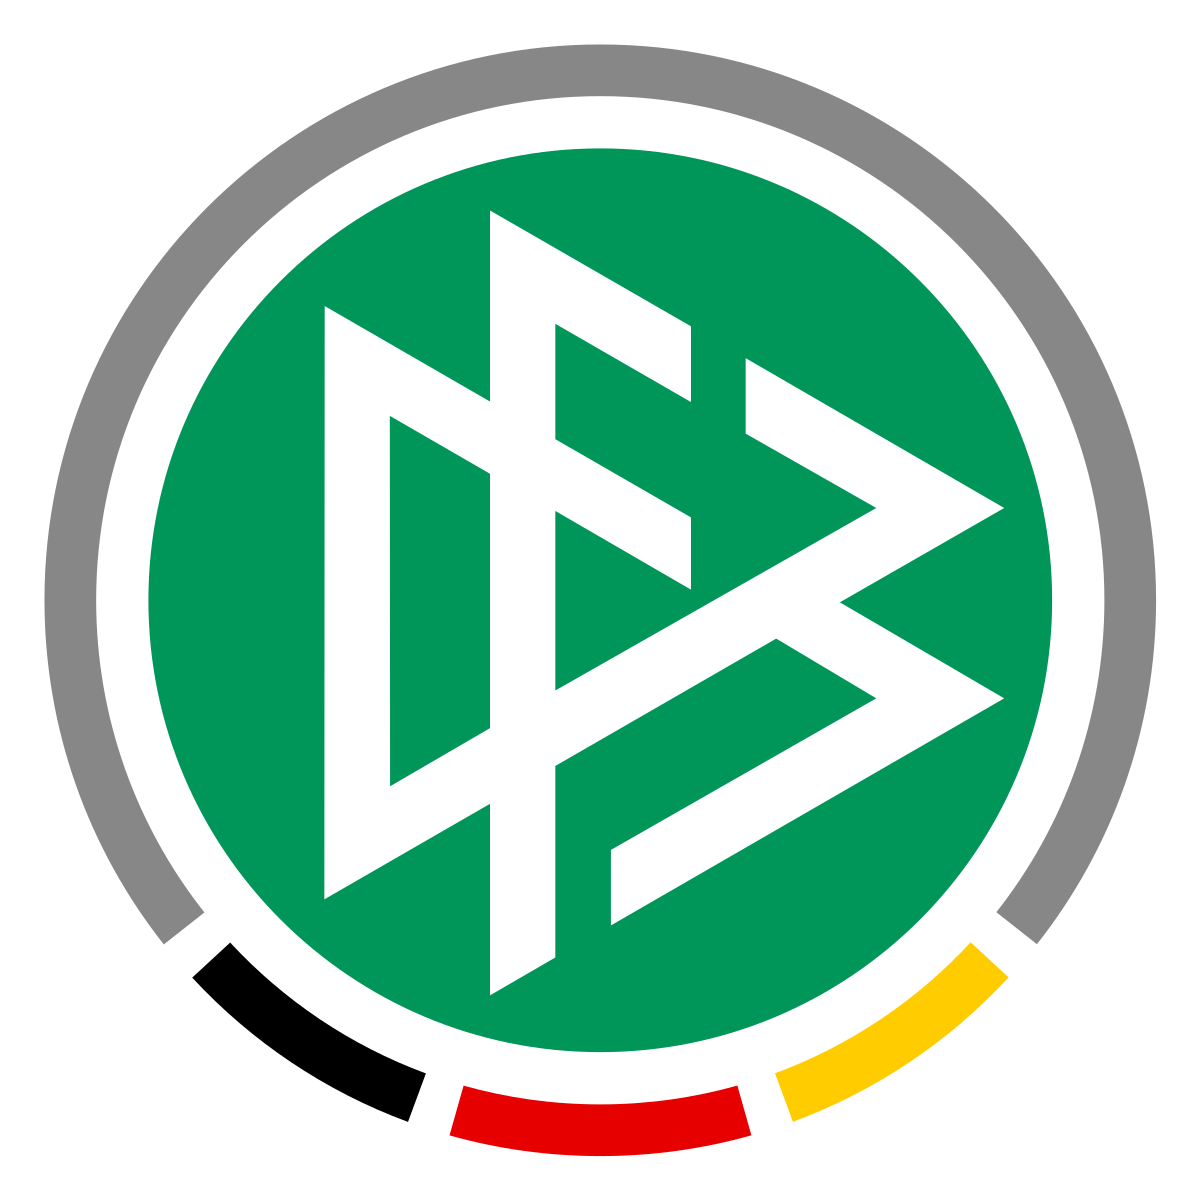 Немецкие футбольные клубы эмблемы